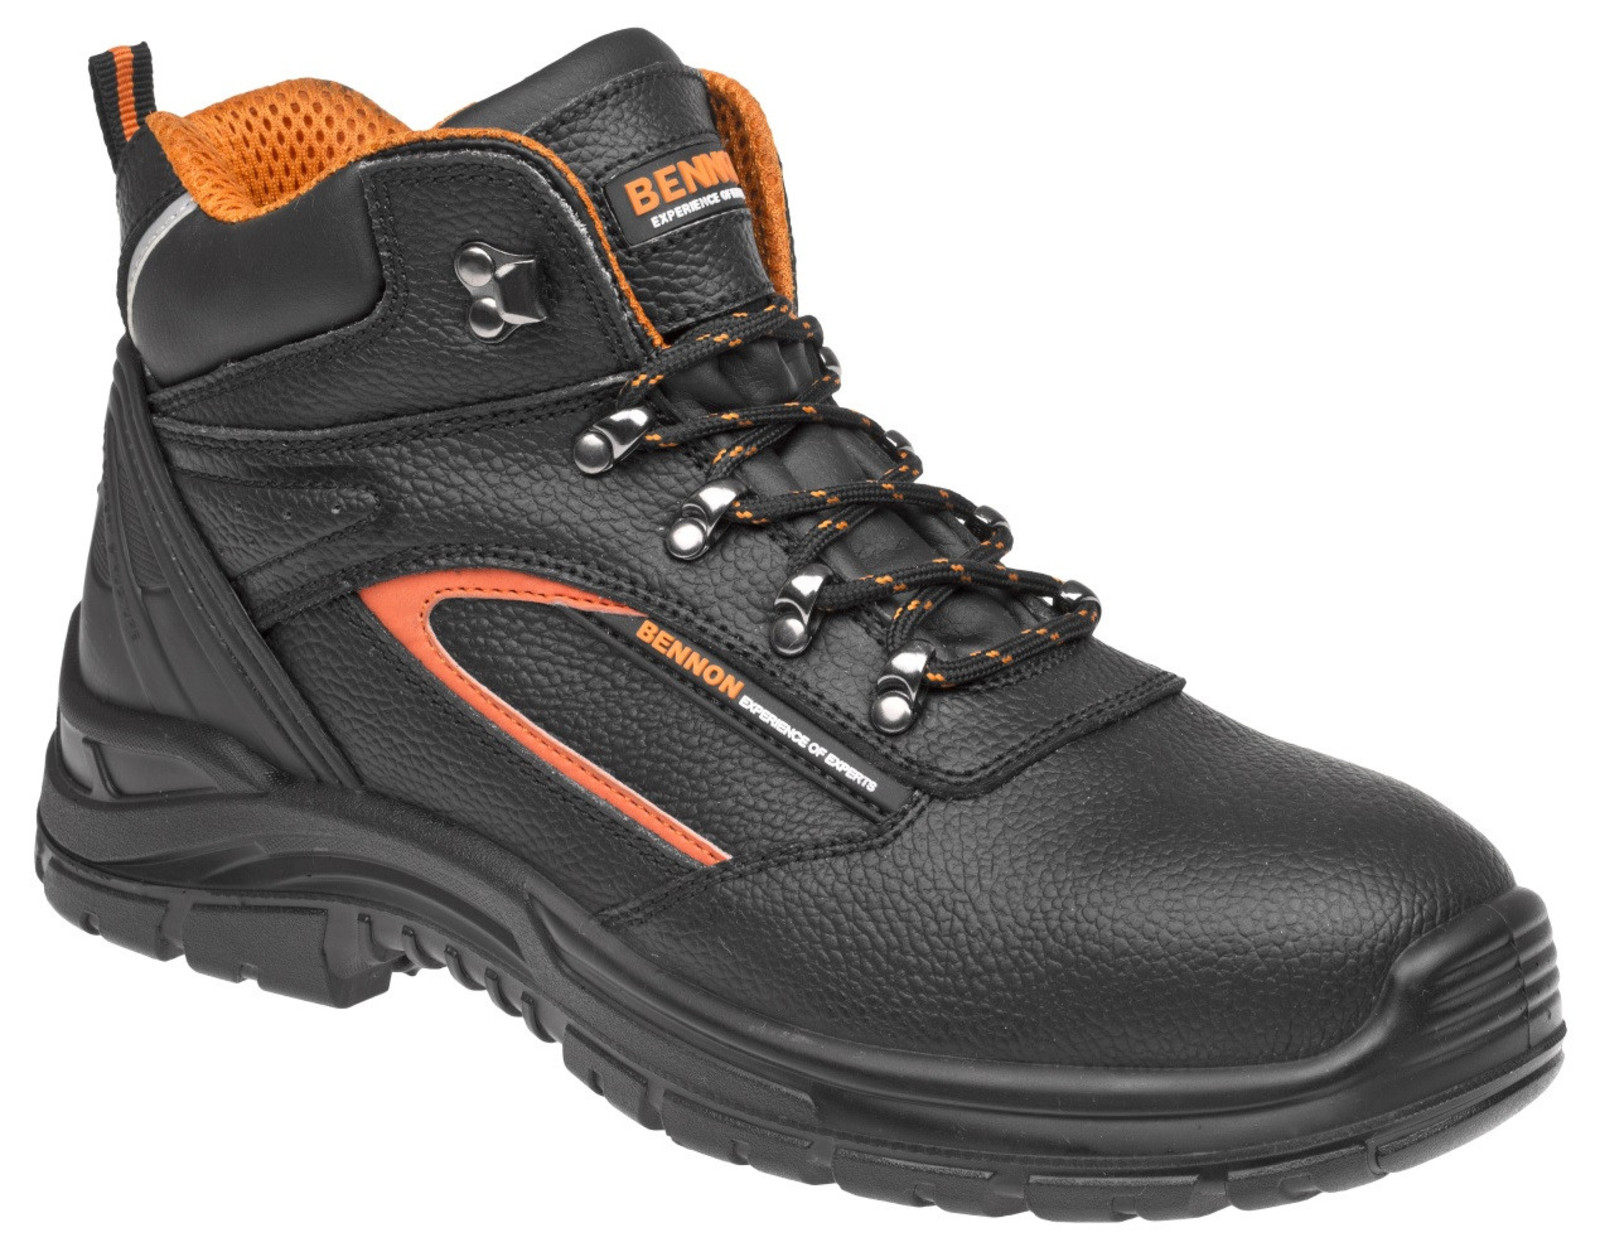 Pracovné topánky Bennon Fortis O2  - veľkosť: 44, farba: čierna